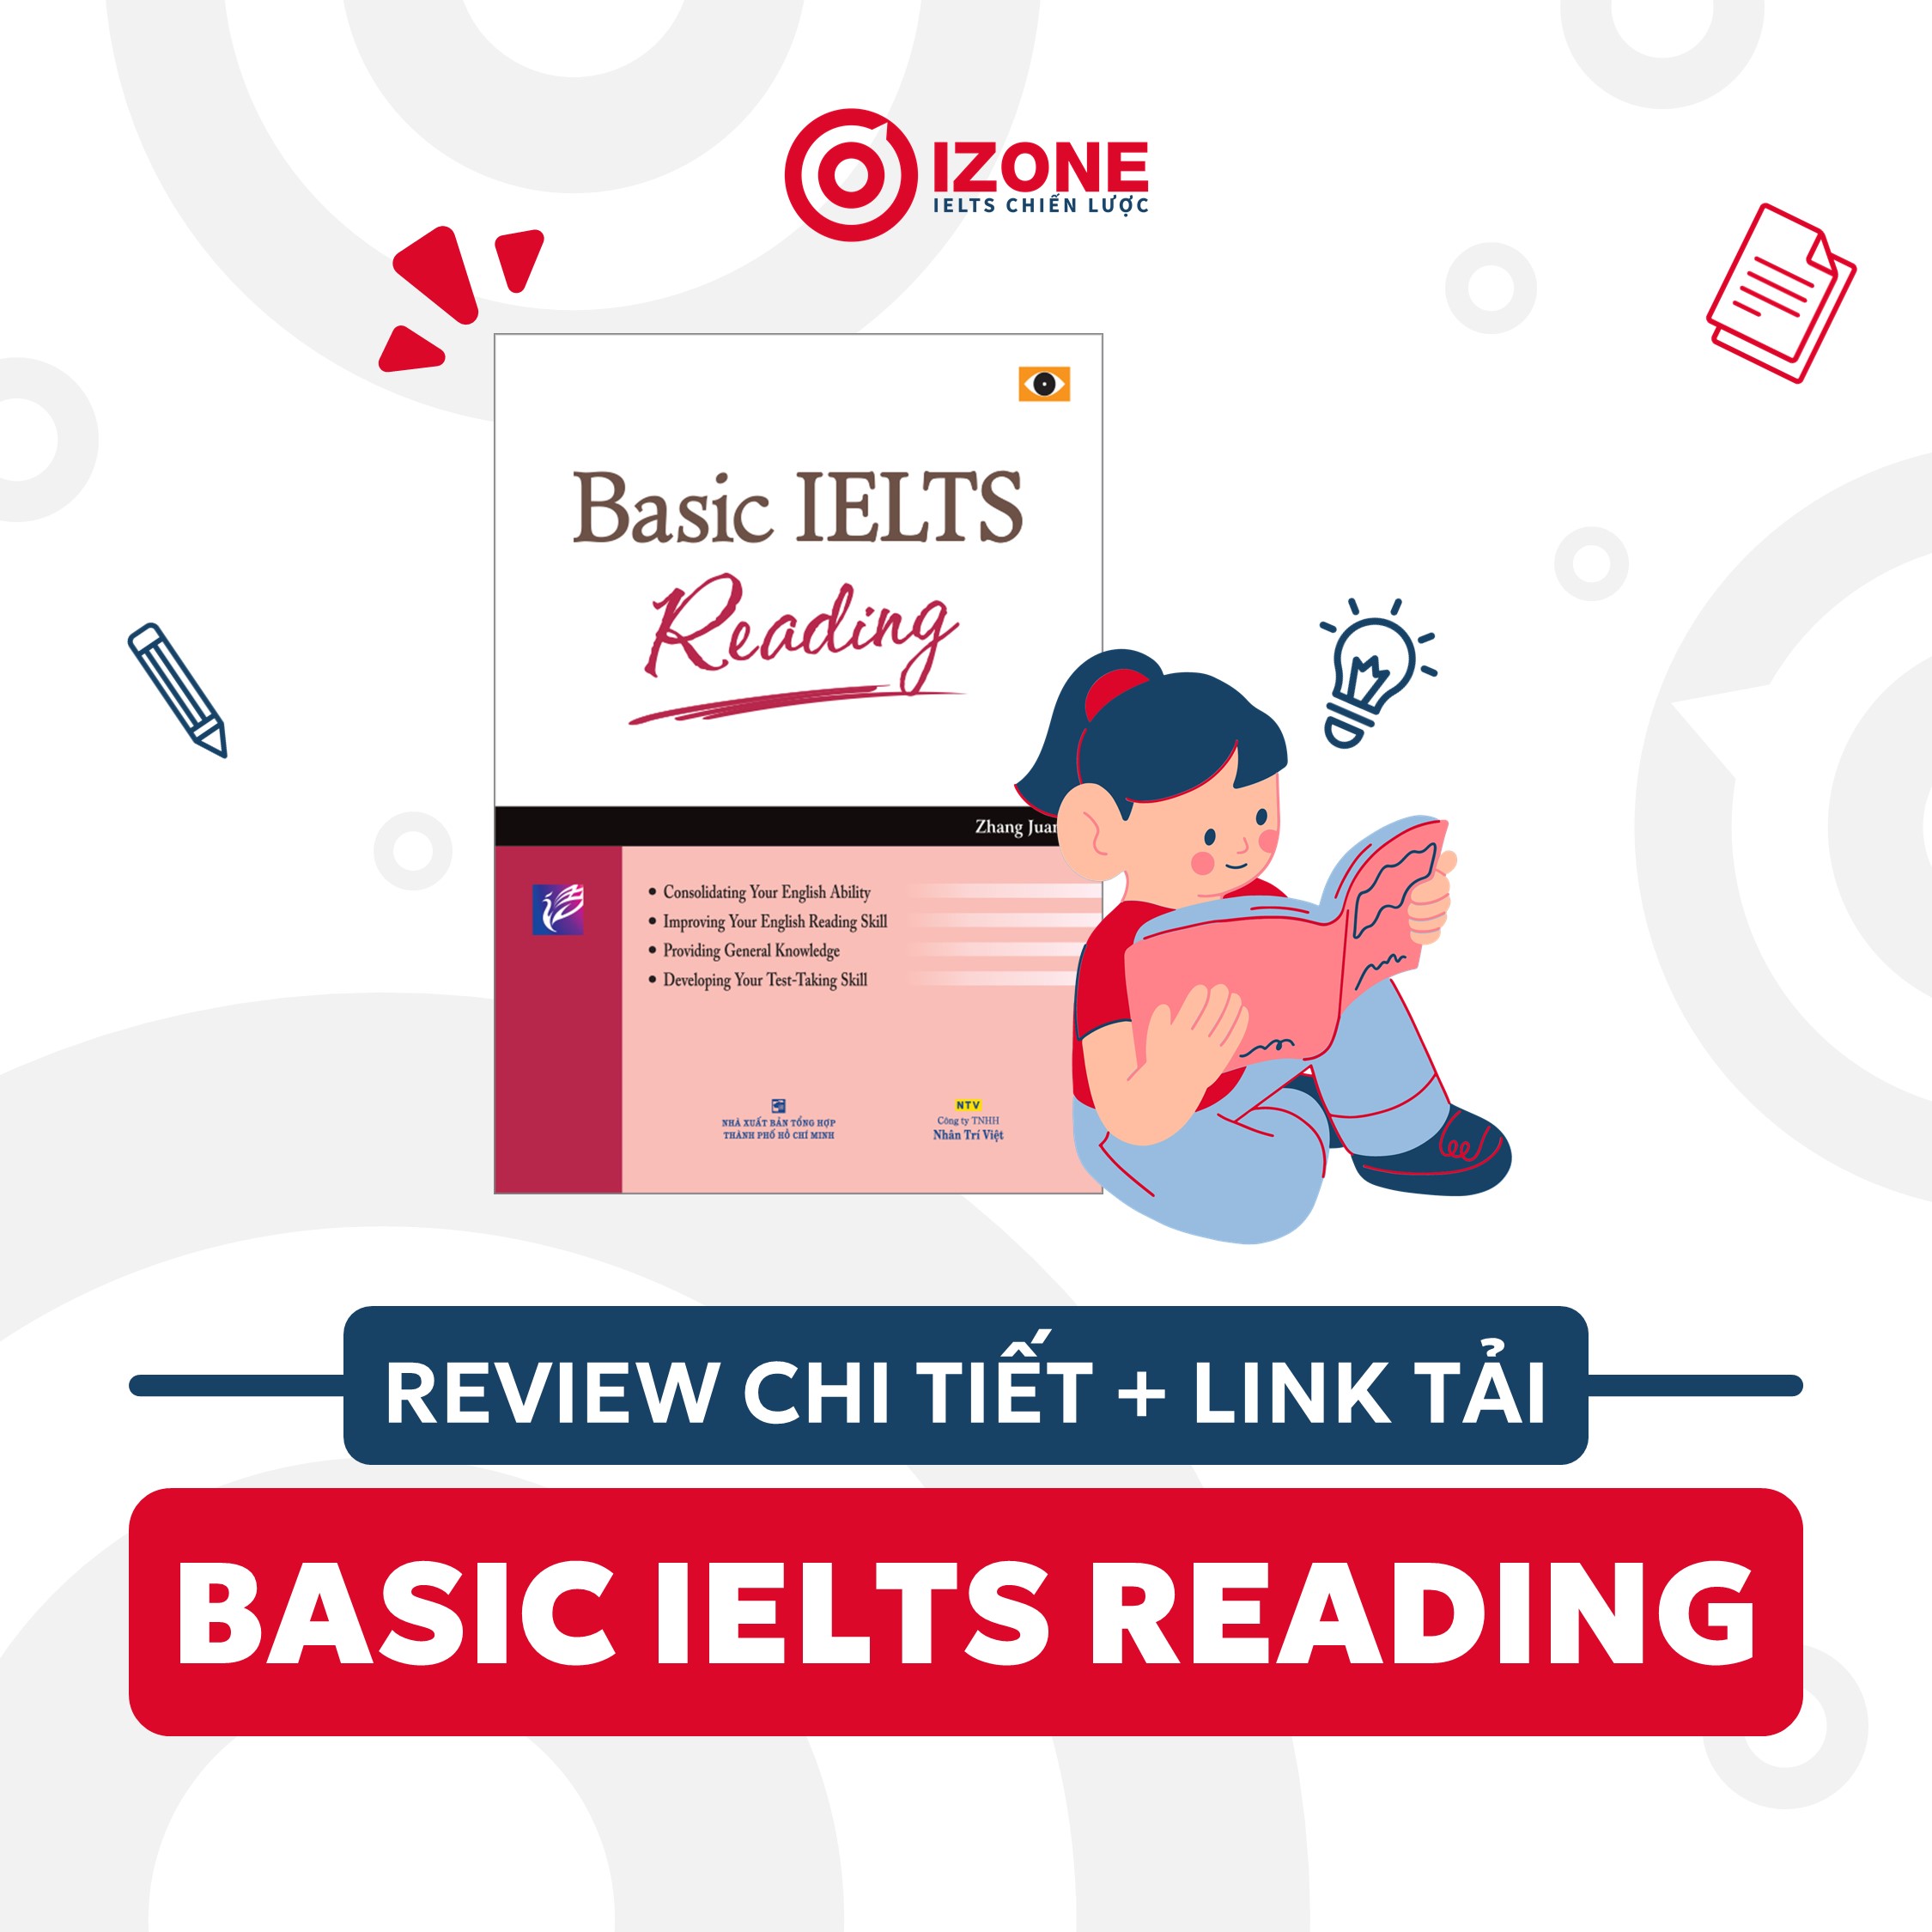 Review sách Basic IELTS Reading chi tiết + link tải PDF miễn phí bản đẹp